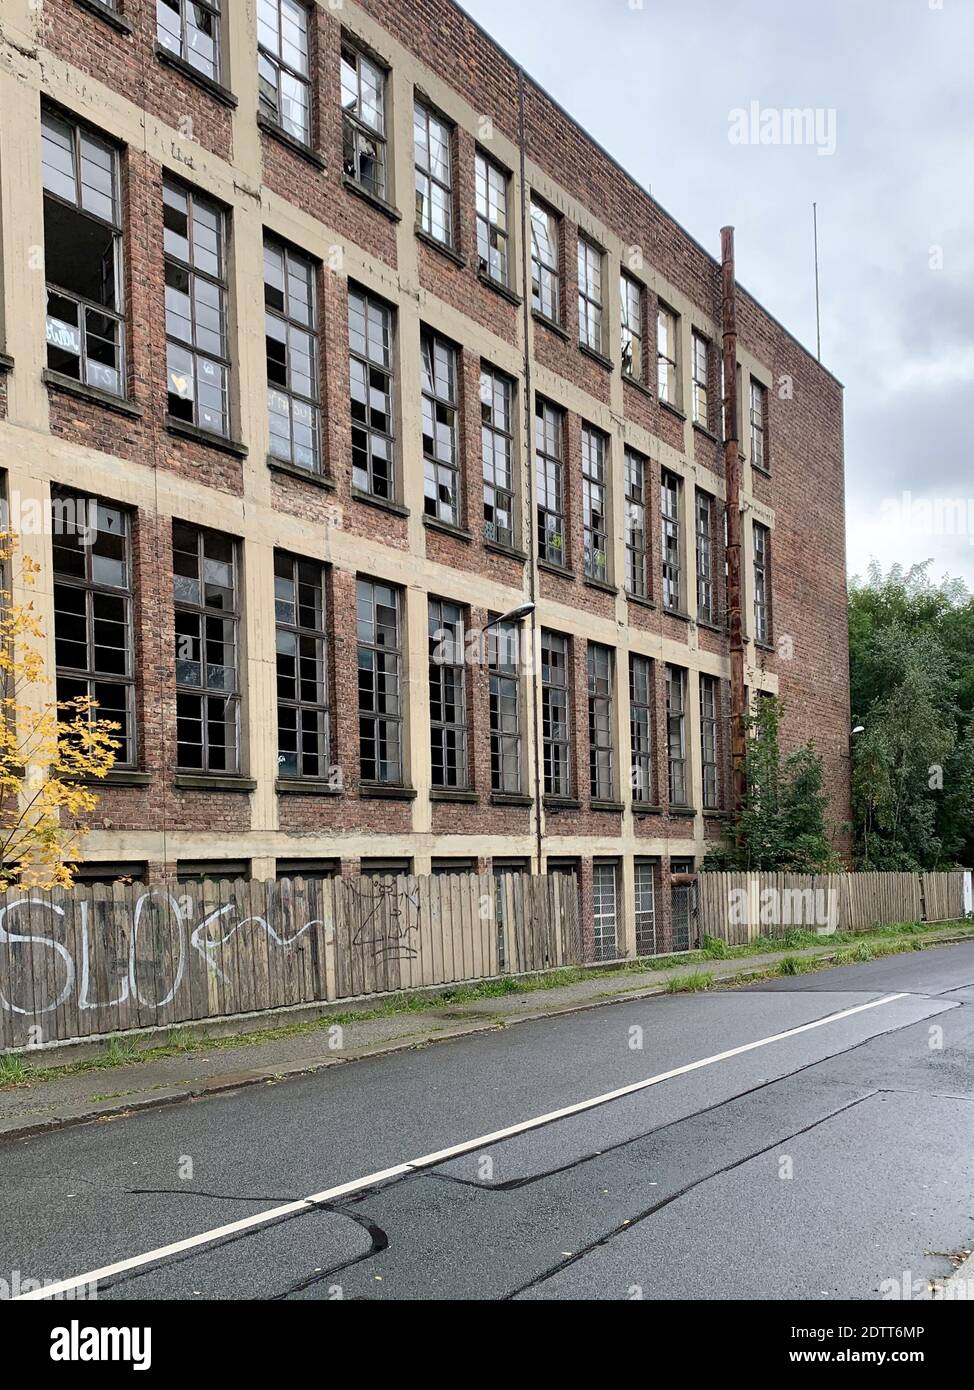 ZITTAU, GERMANY - Oct 06, 2020: Haus mit zerstoerten oder kaputten Fensterscheiben im Industriegebiet Stock Photo